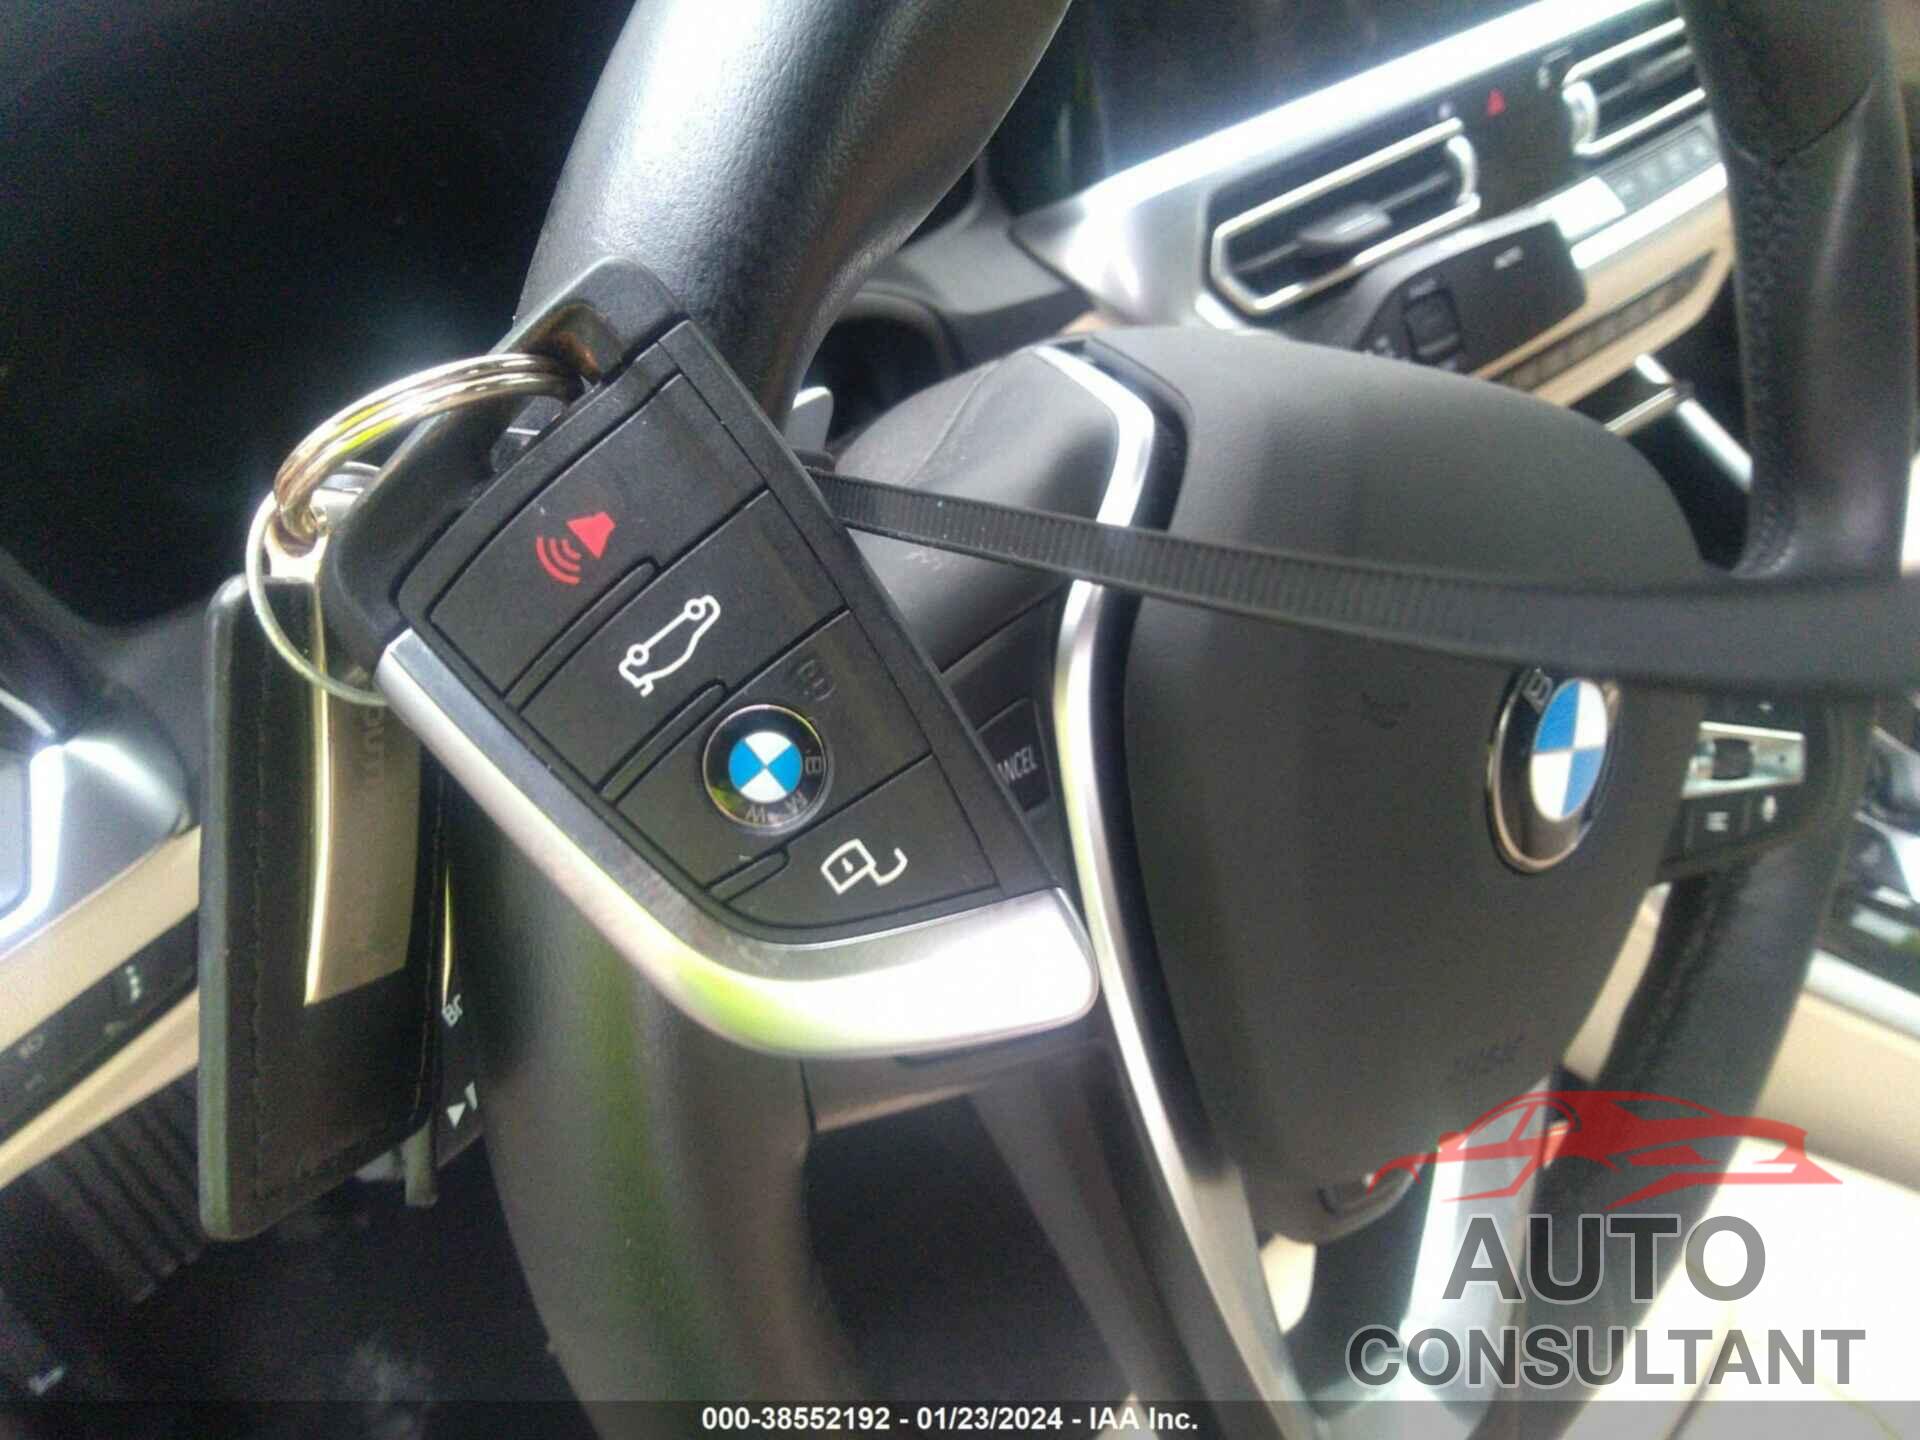 BMW 430I 2023 - WBA43AT08PCL50234